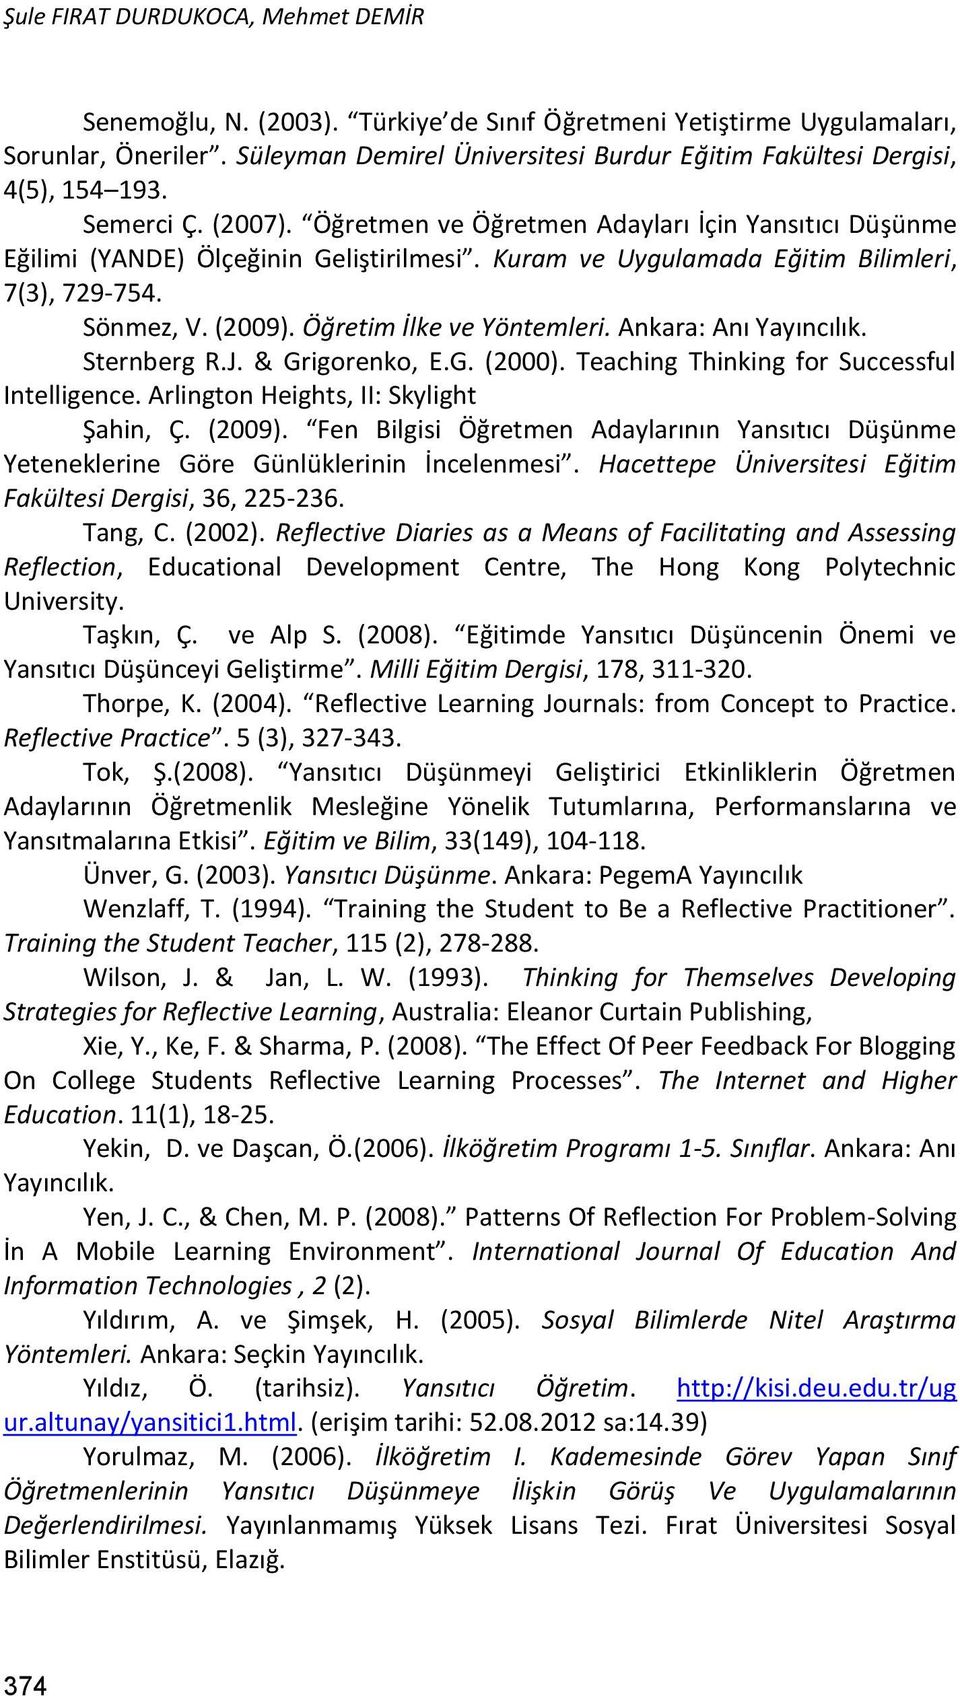 Kuram ve Uygulamada Eğitim Bilimleri, 7(3), 729-754. Sönmez, V. (2009). Öğretim İlke ve Yöntemleri. Ankara: Anı Yayıncılık. Sternberg R.J. & Grigorenko, E.G. (2000).